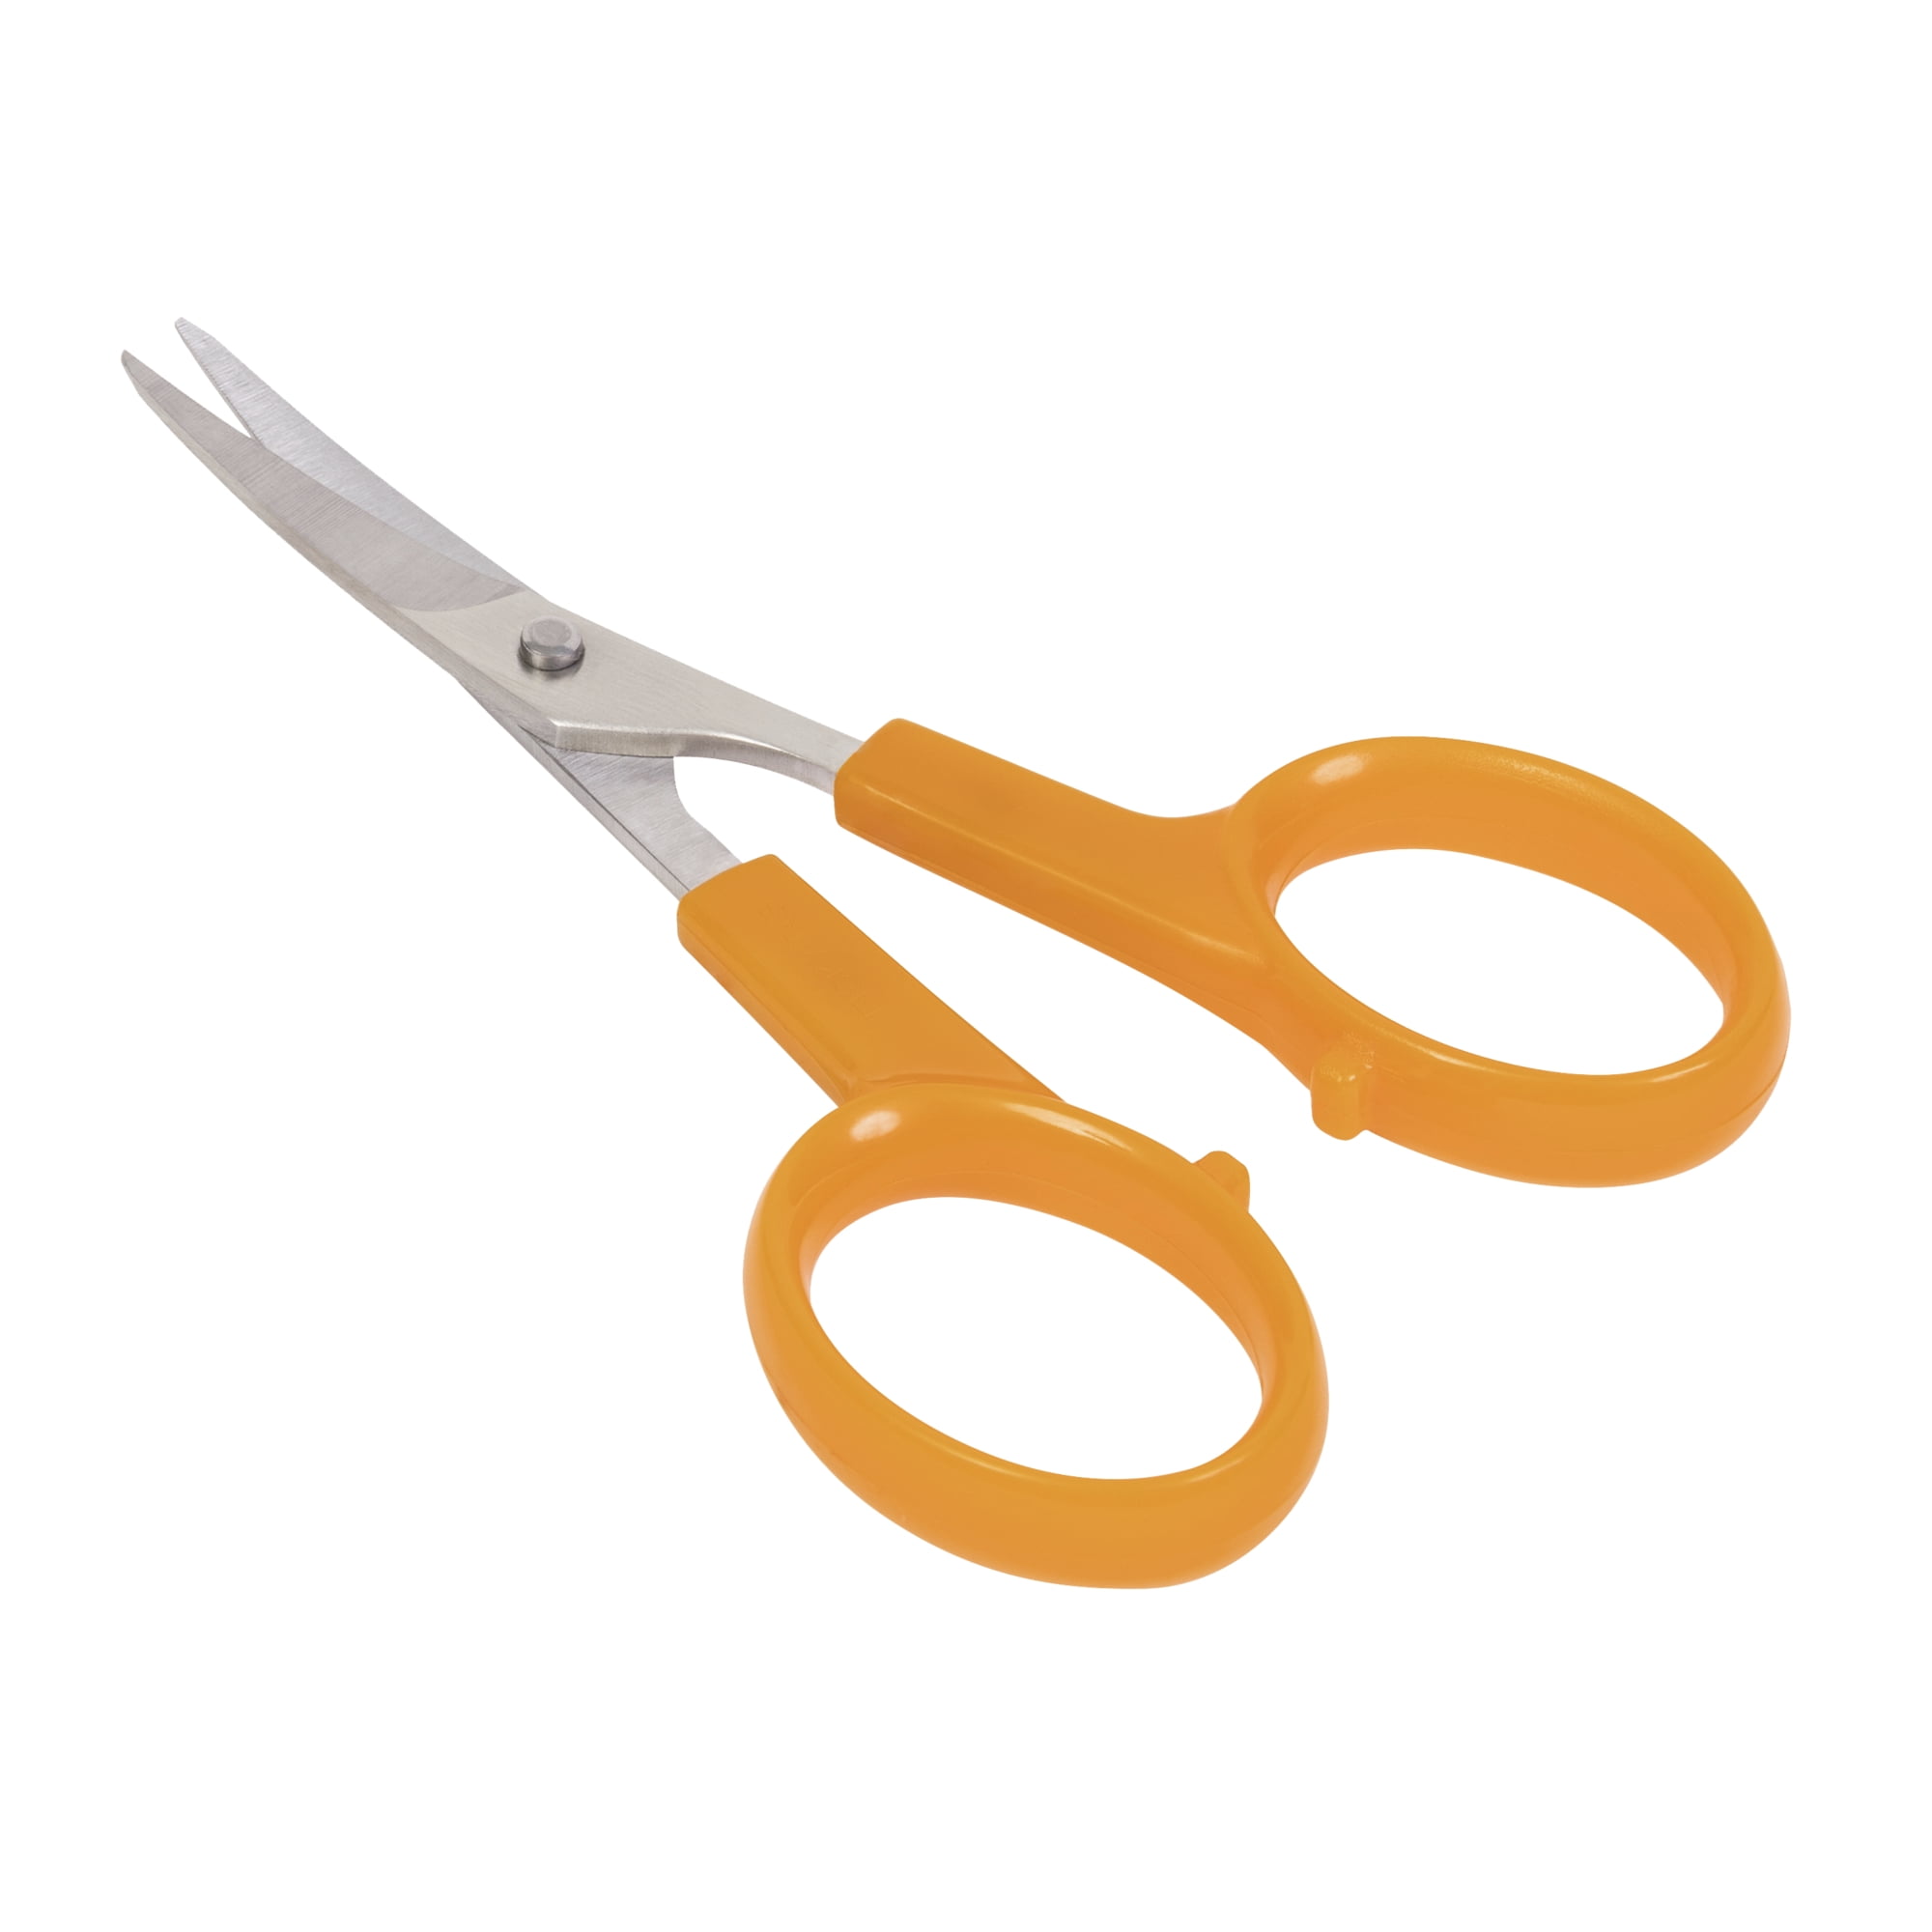  Fiskars SoftGrip Titanium Scissors All Purpose - 8 Straight  Handle Scissors for Office, Arts, and Crafts - Orange